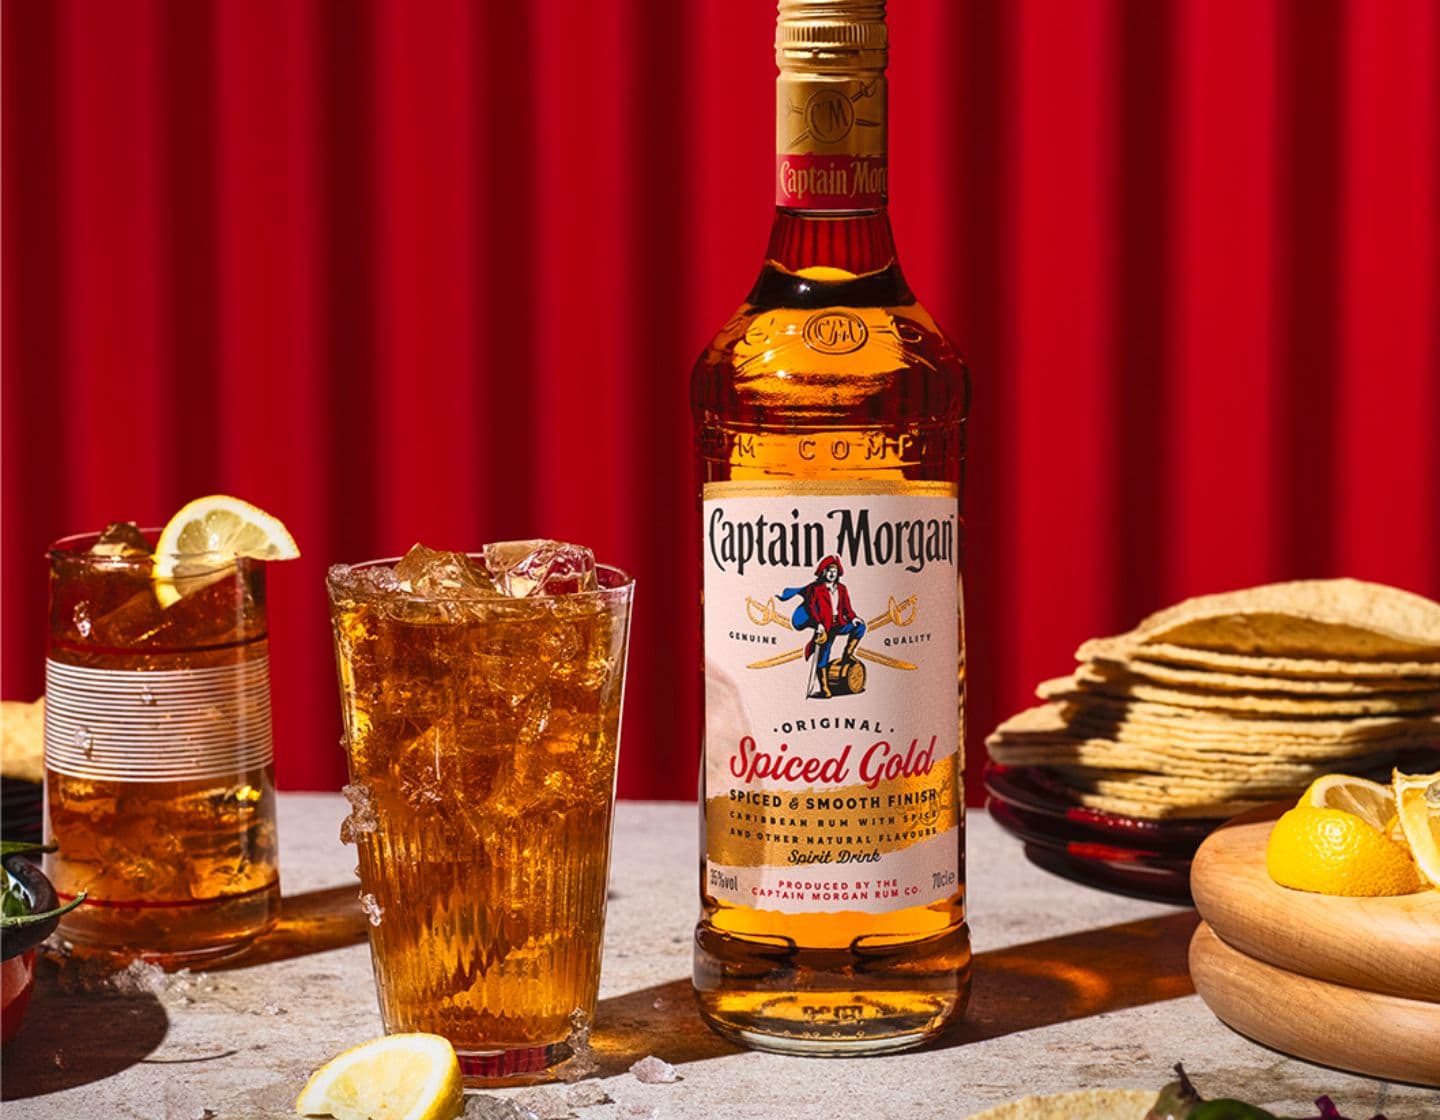 Flasche Captain Morgan Original Spiced Gold auf einem Tisch umgeben von verschiedenen Speisen und Getränken vor rotem Hintergrund